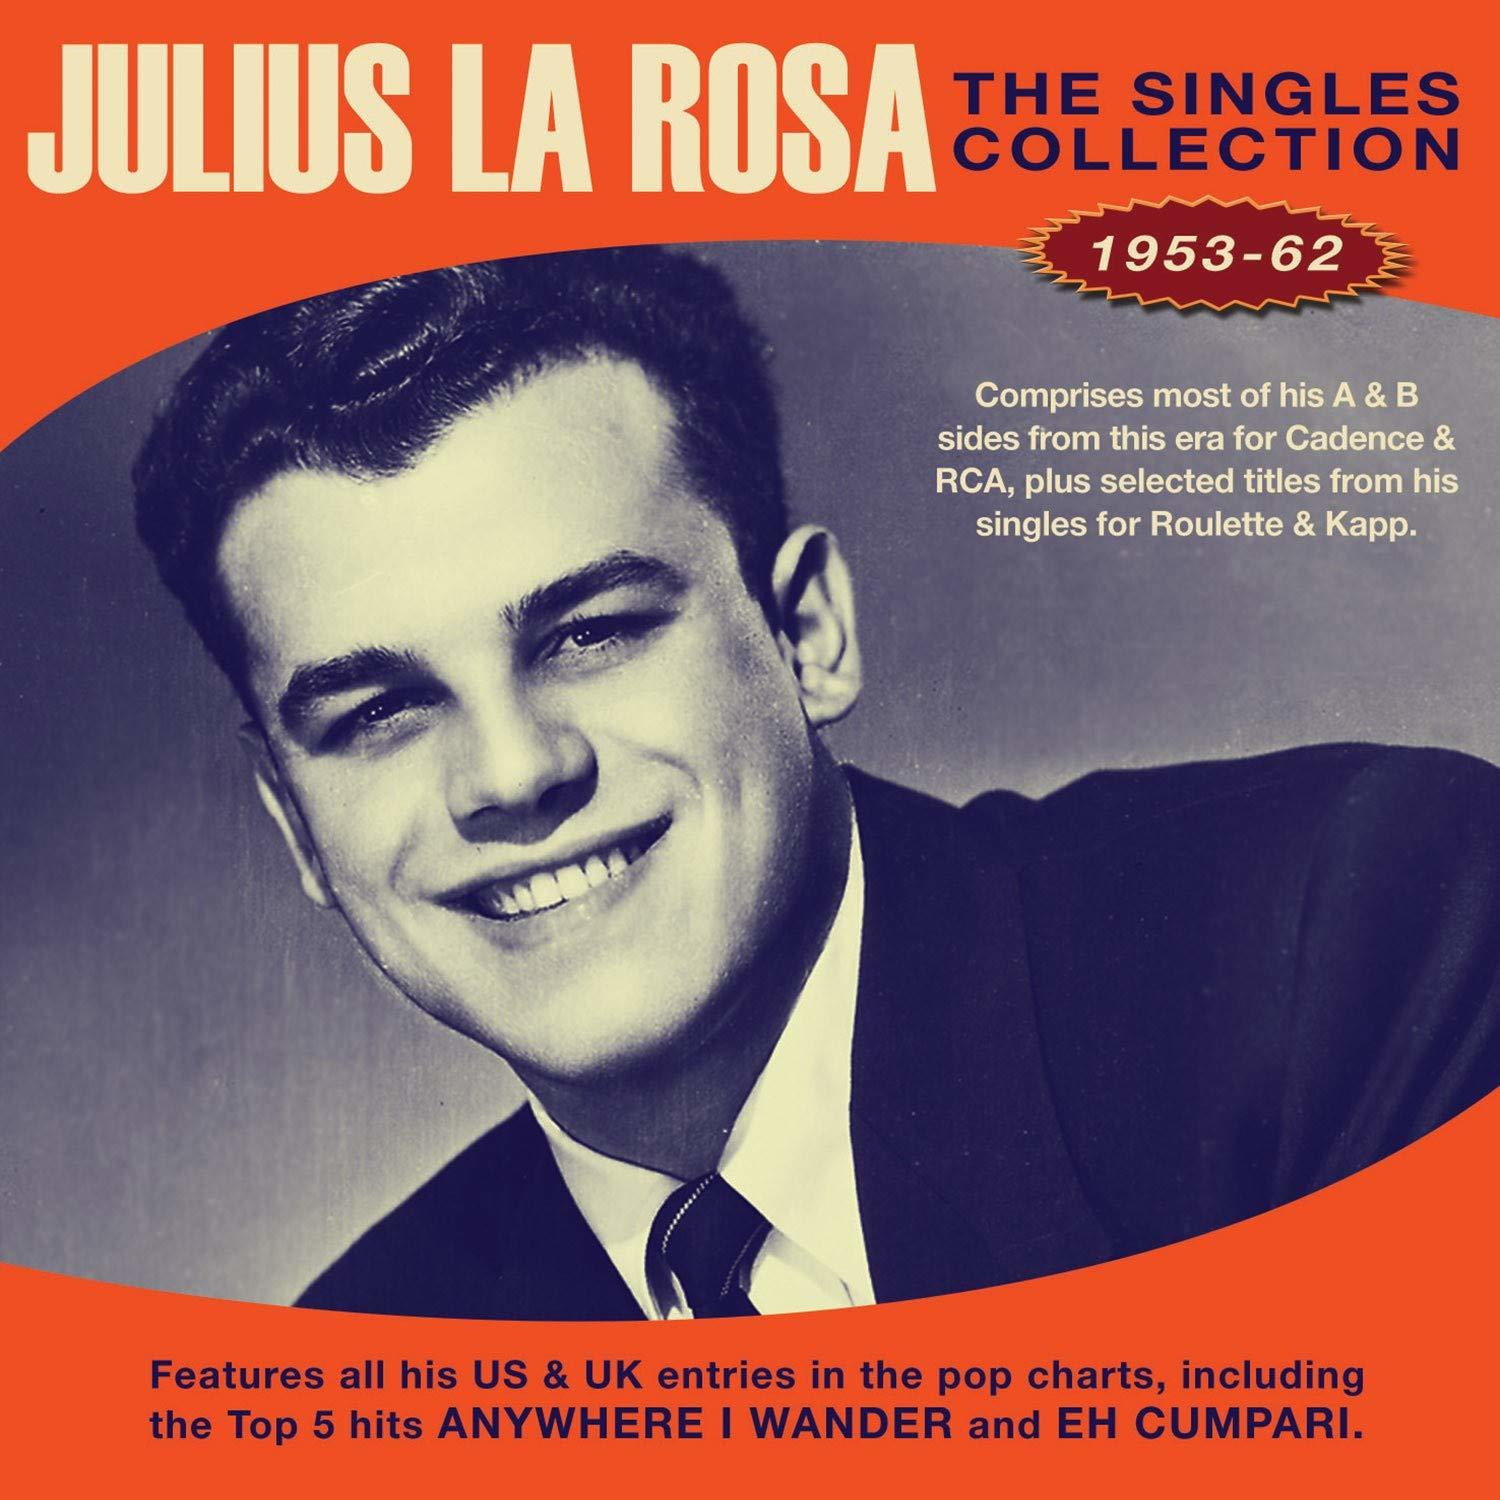 Julius La Rosa The (CD) - 1953-1962 Collection - Singles